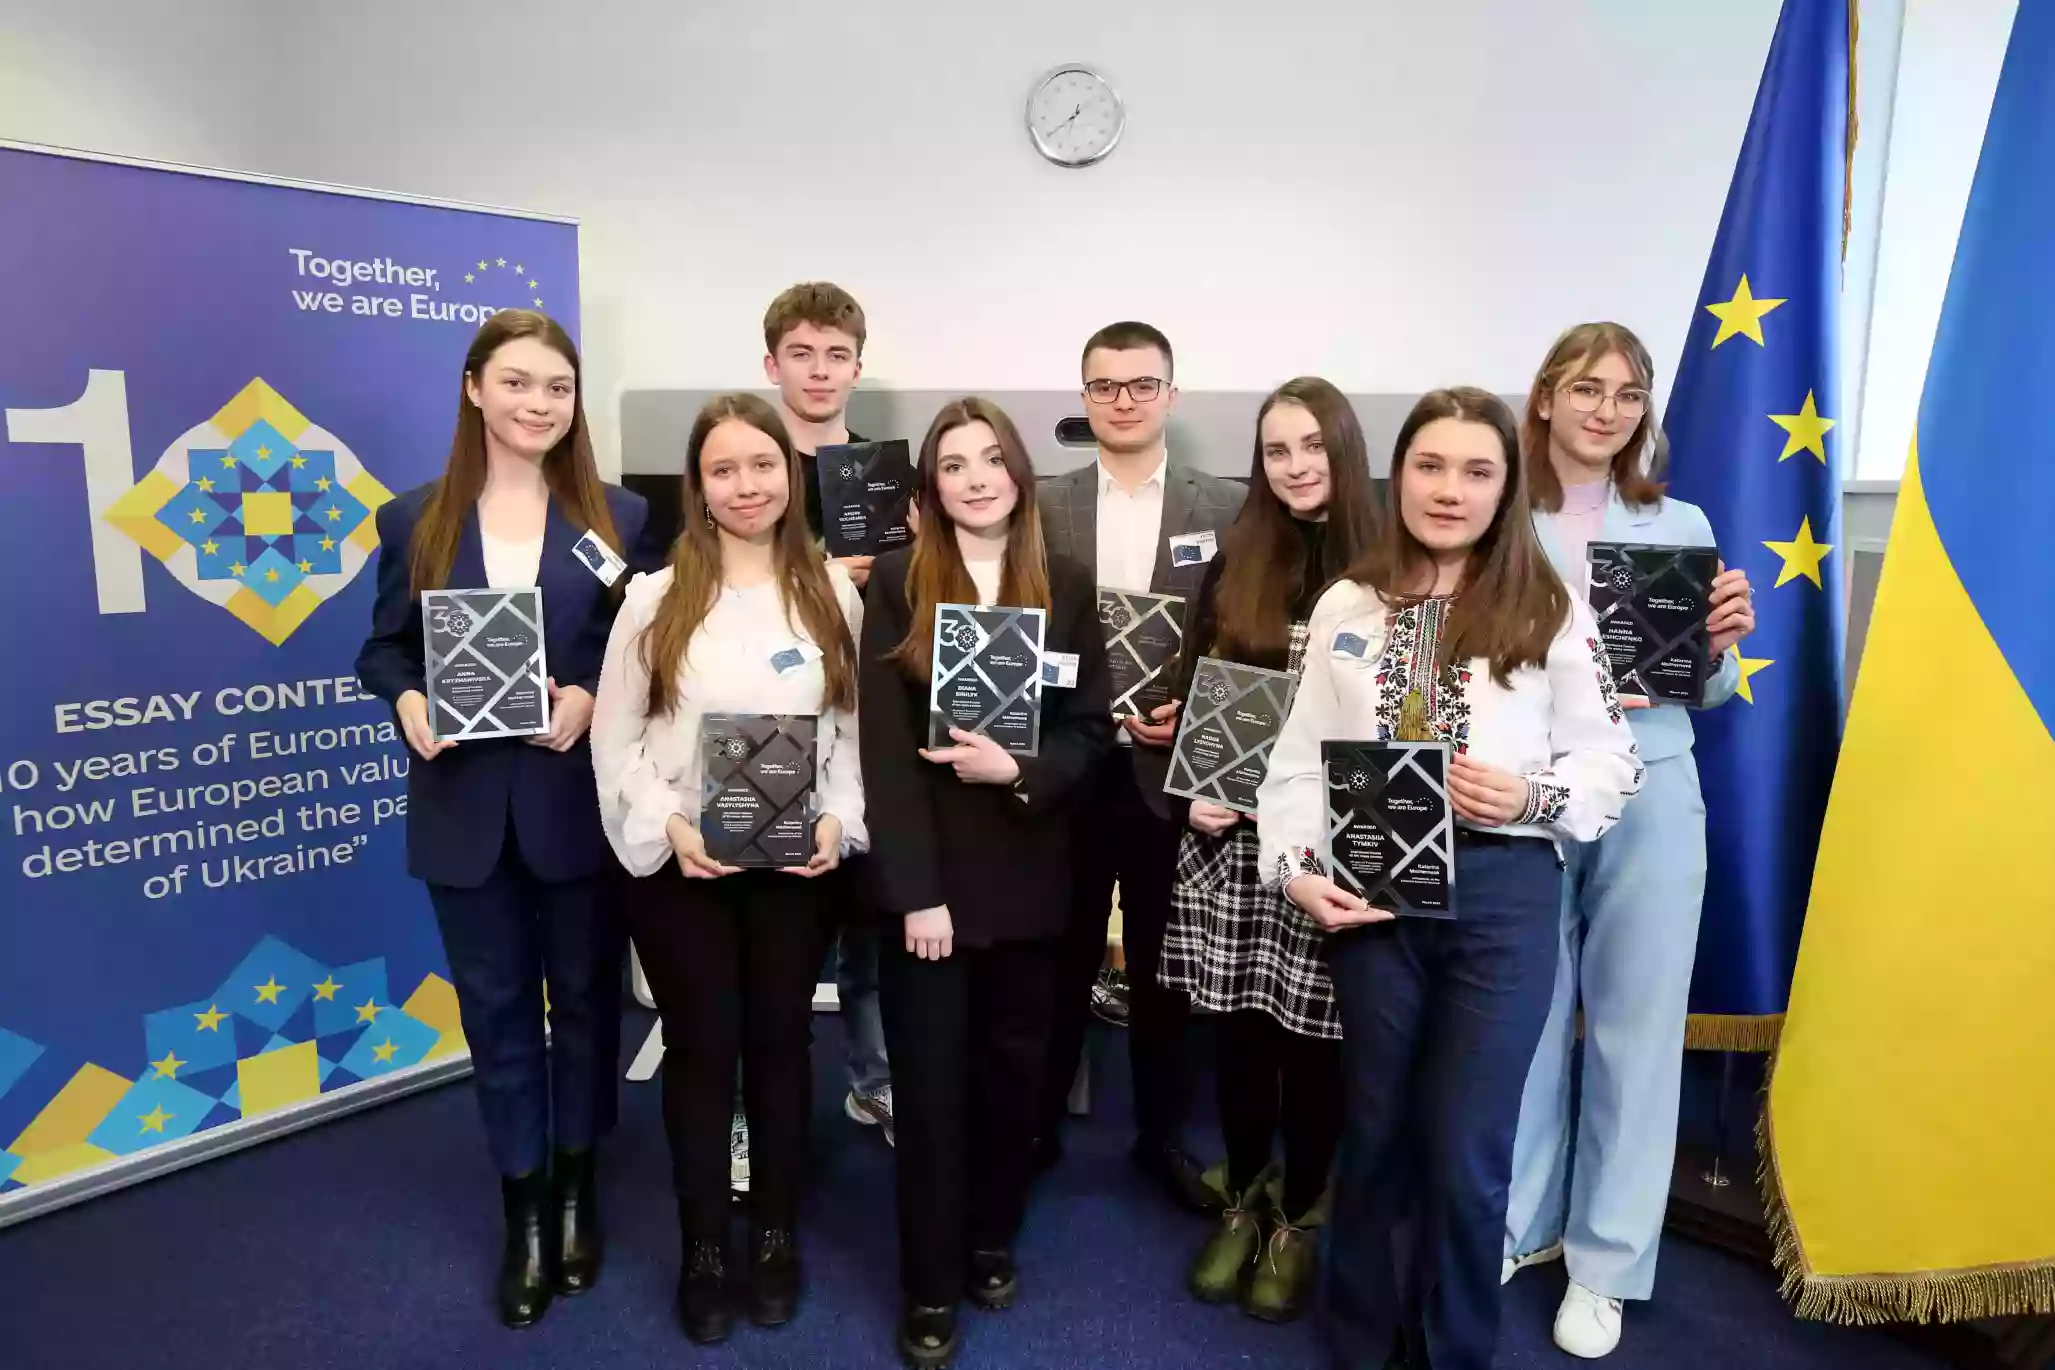 Нагородили переможців конкурсу есе «10 років Євромайдану: як європейські цінності визначили шлях України»